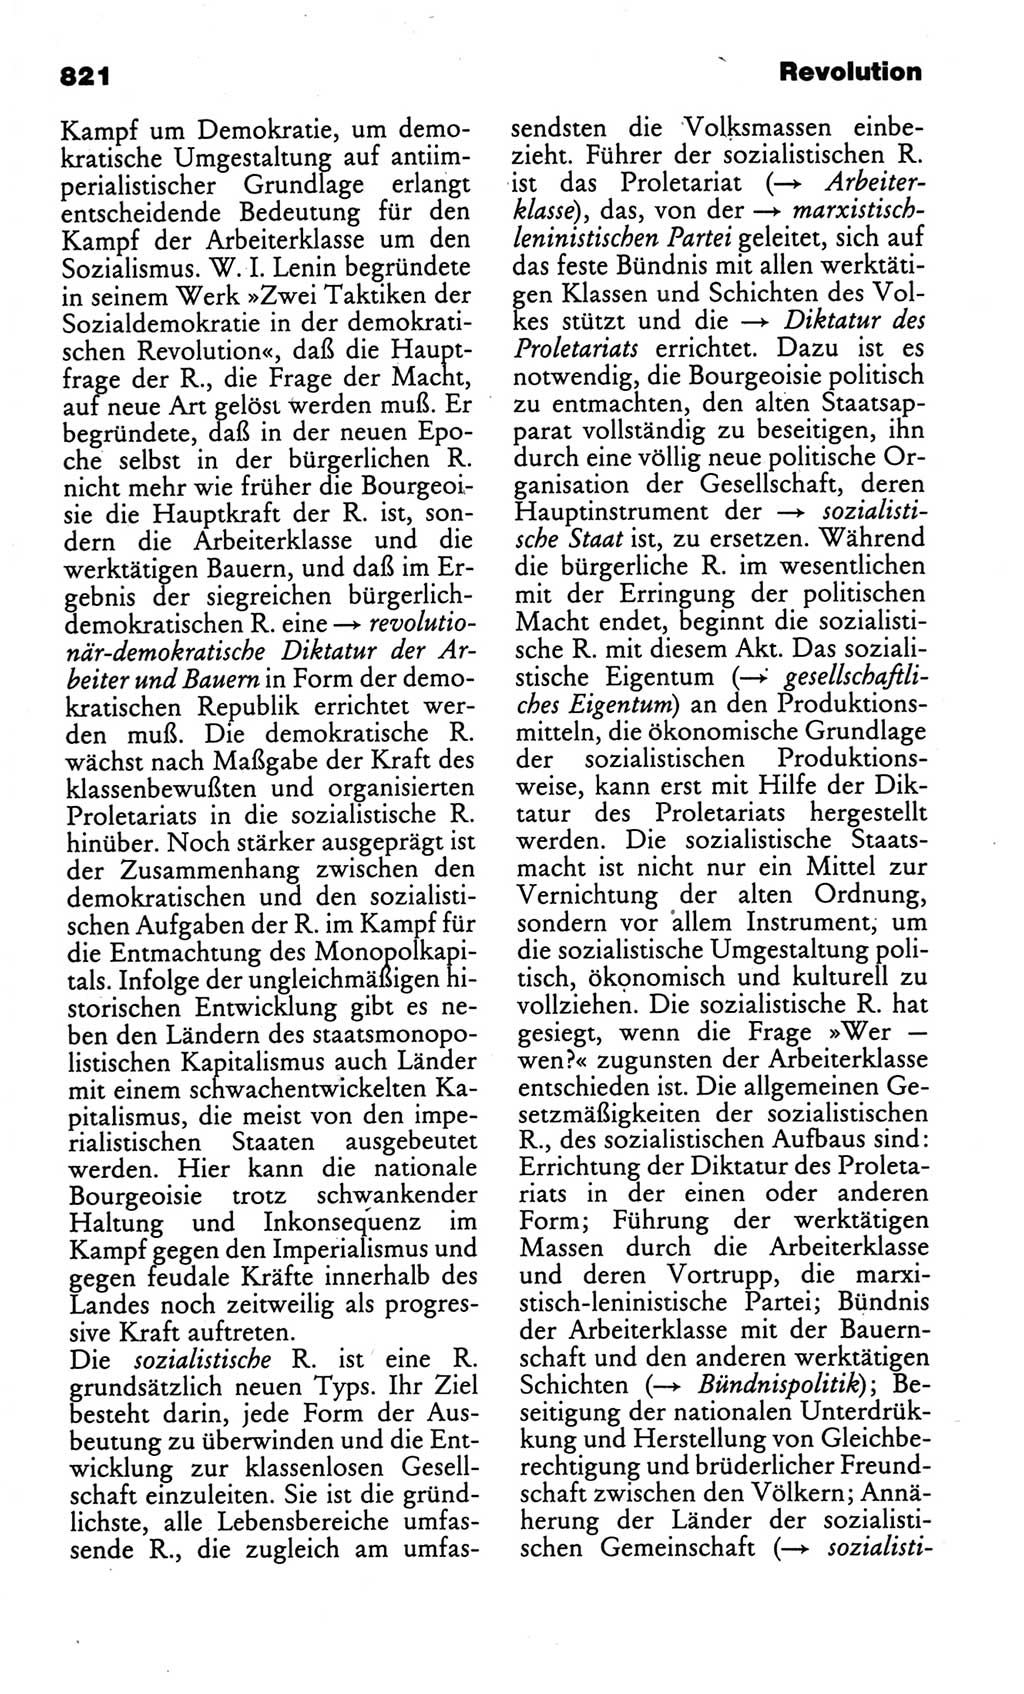 Kleines politisches Wörterbuch [Deutsche Demokratische Republik (DDR)] 1986, Seite 821 (Kl. pol. Wb. DDR 1986, S. 821)